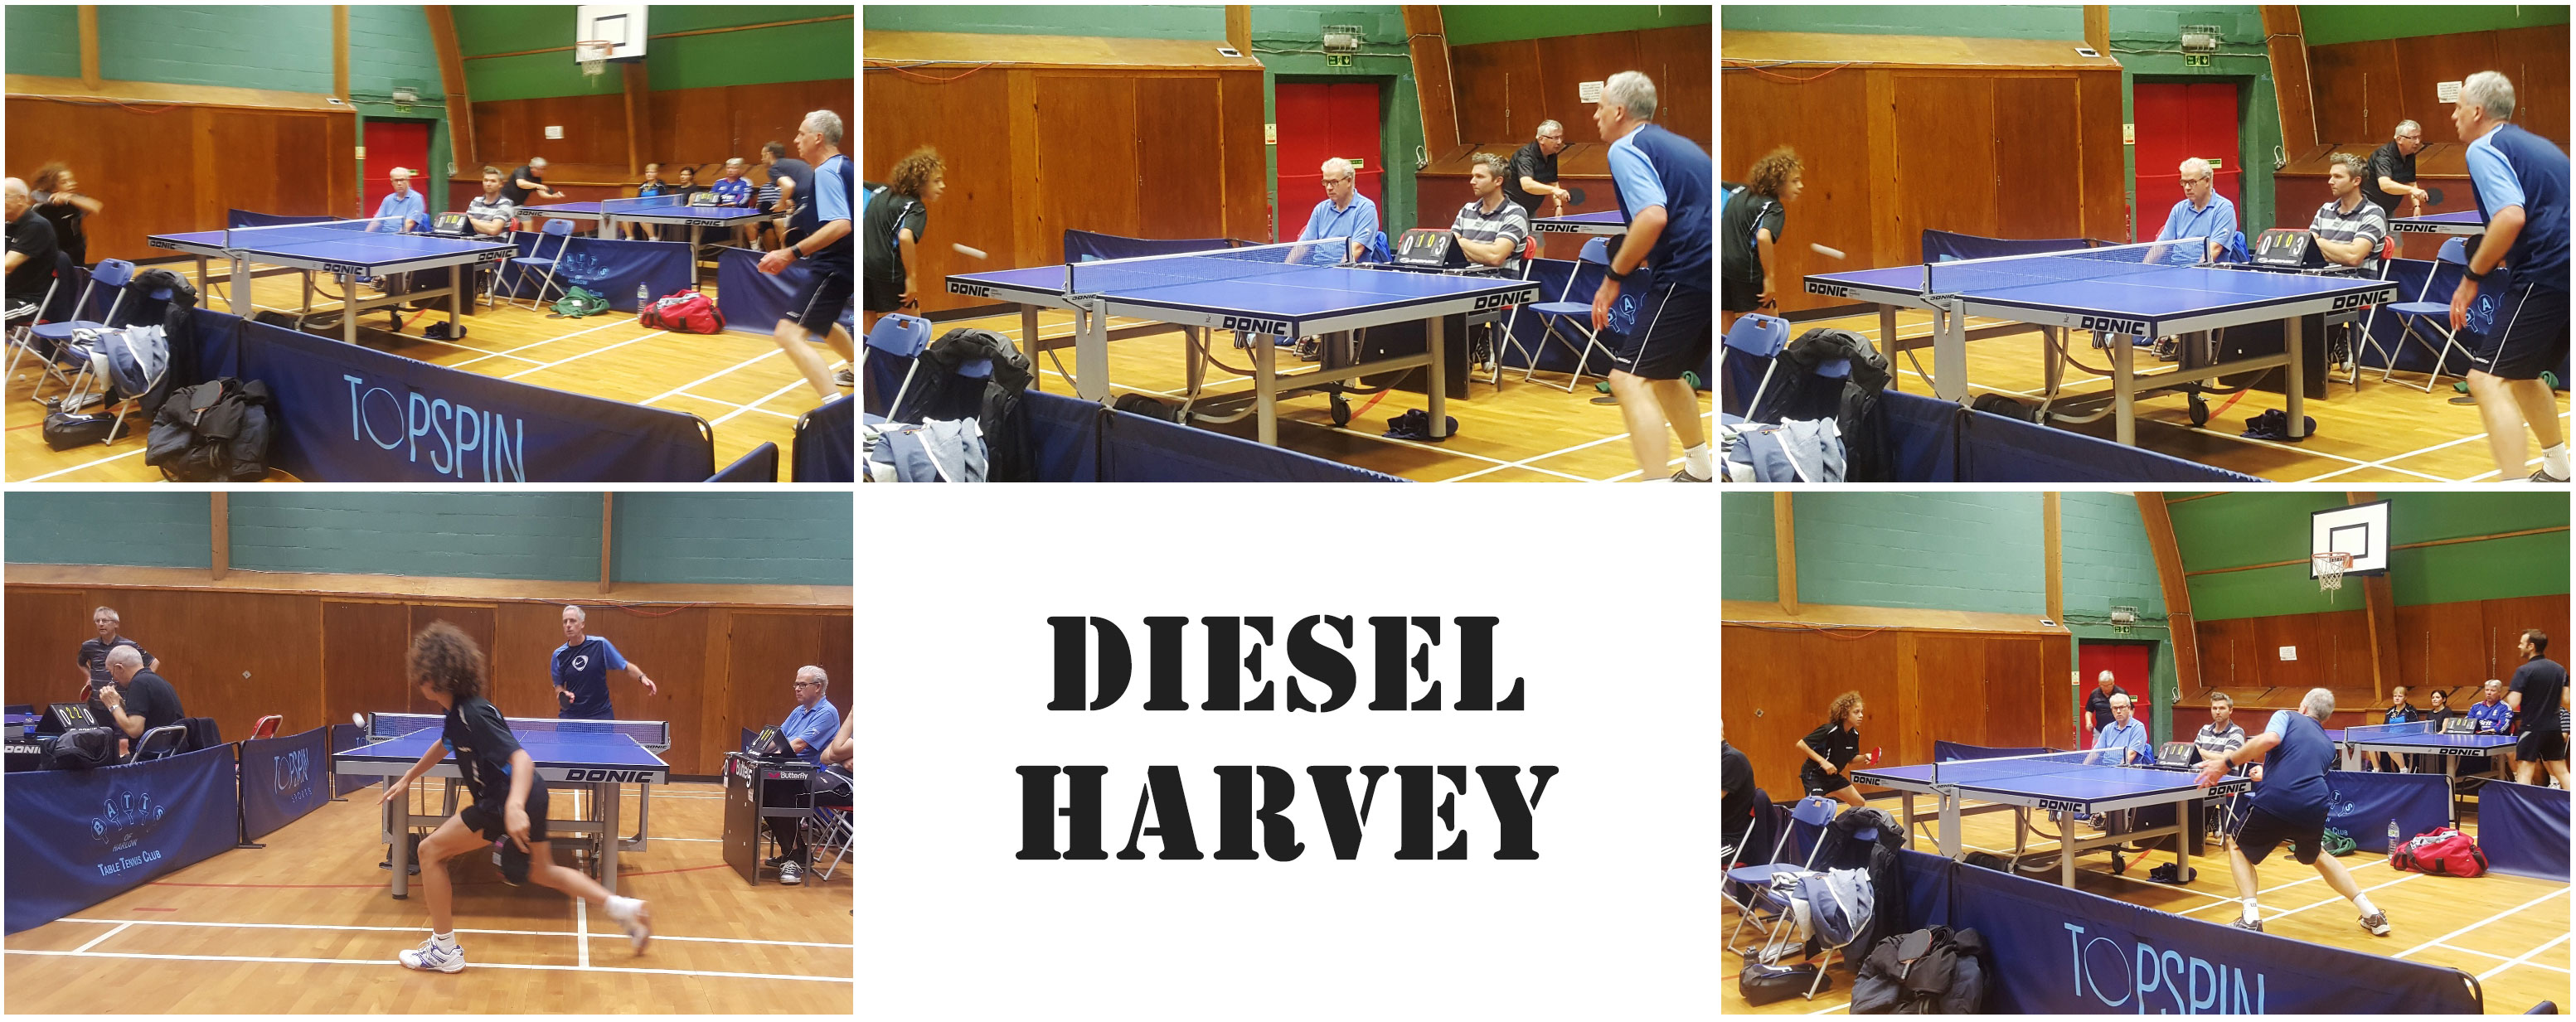 Diesel Harvey